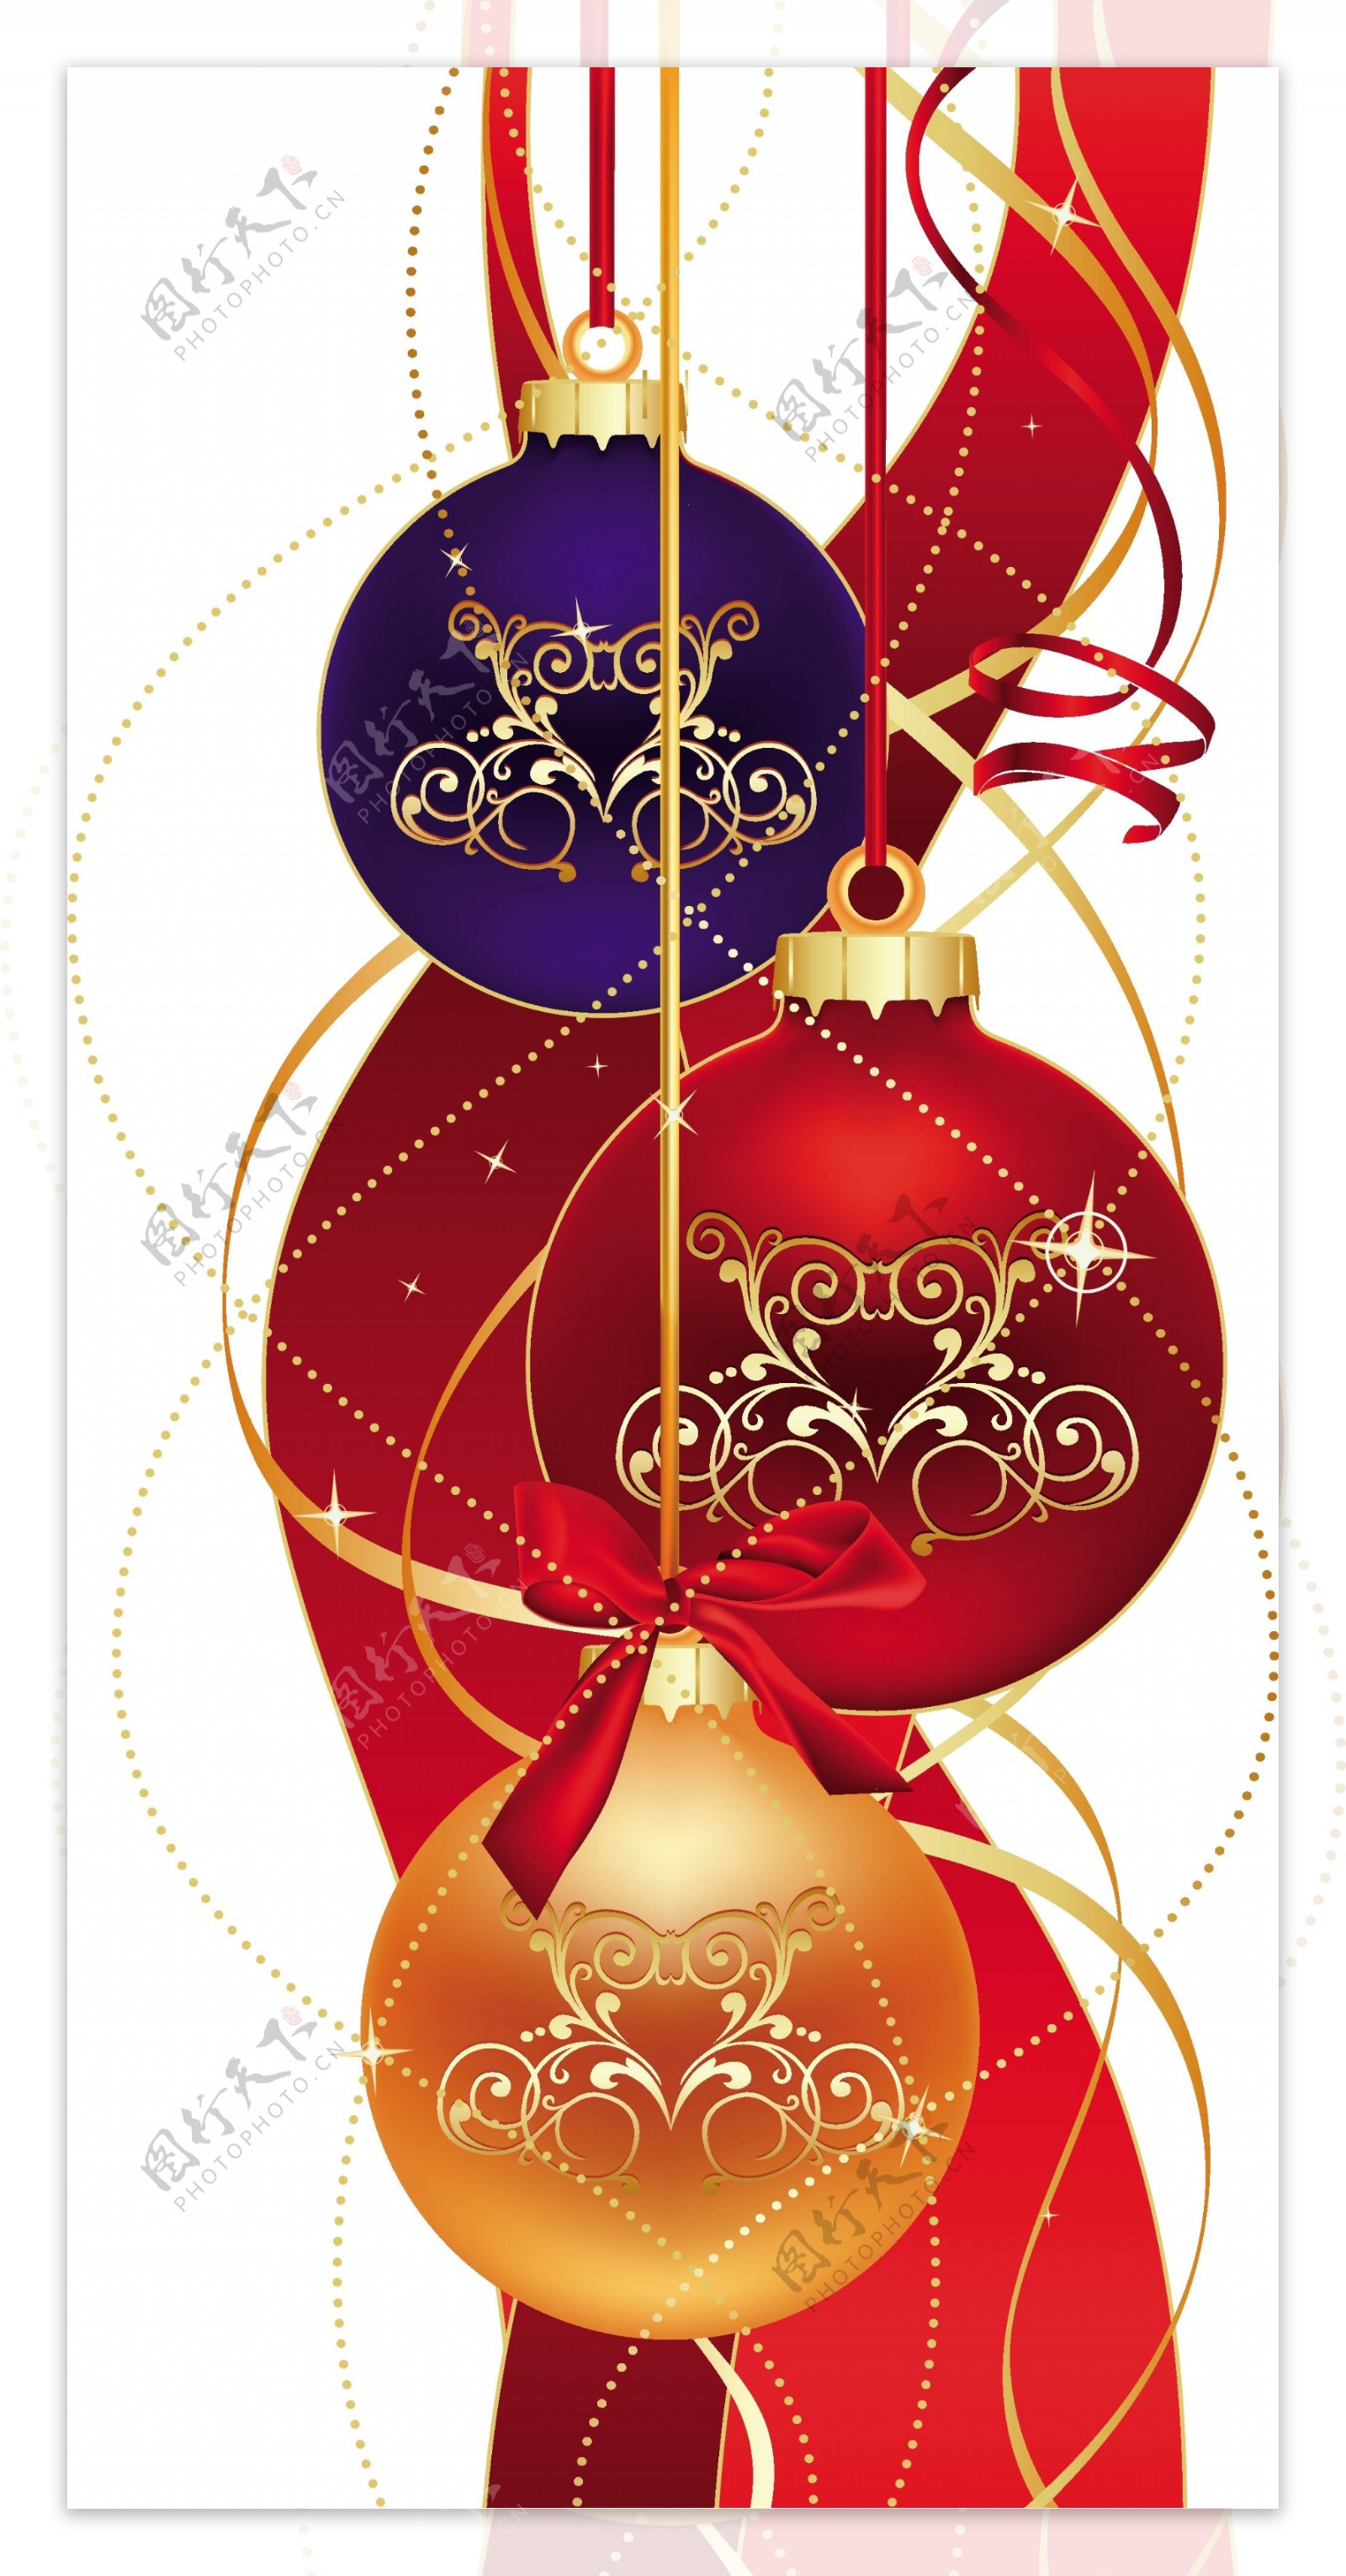 矢量圣诞节球体雪花节日动感线条新年矢量素材